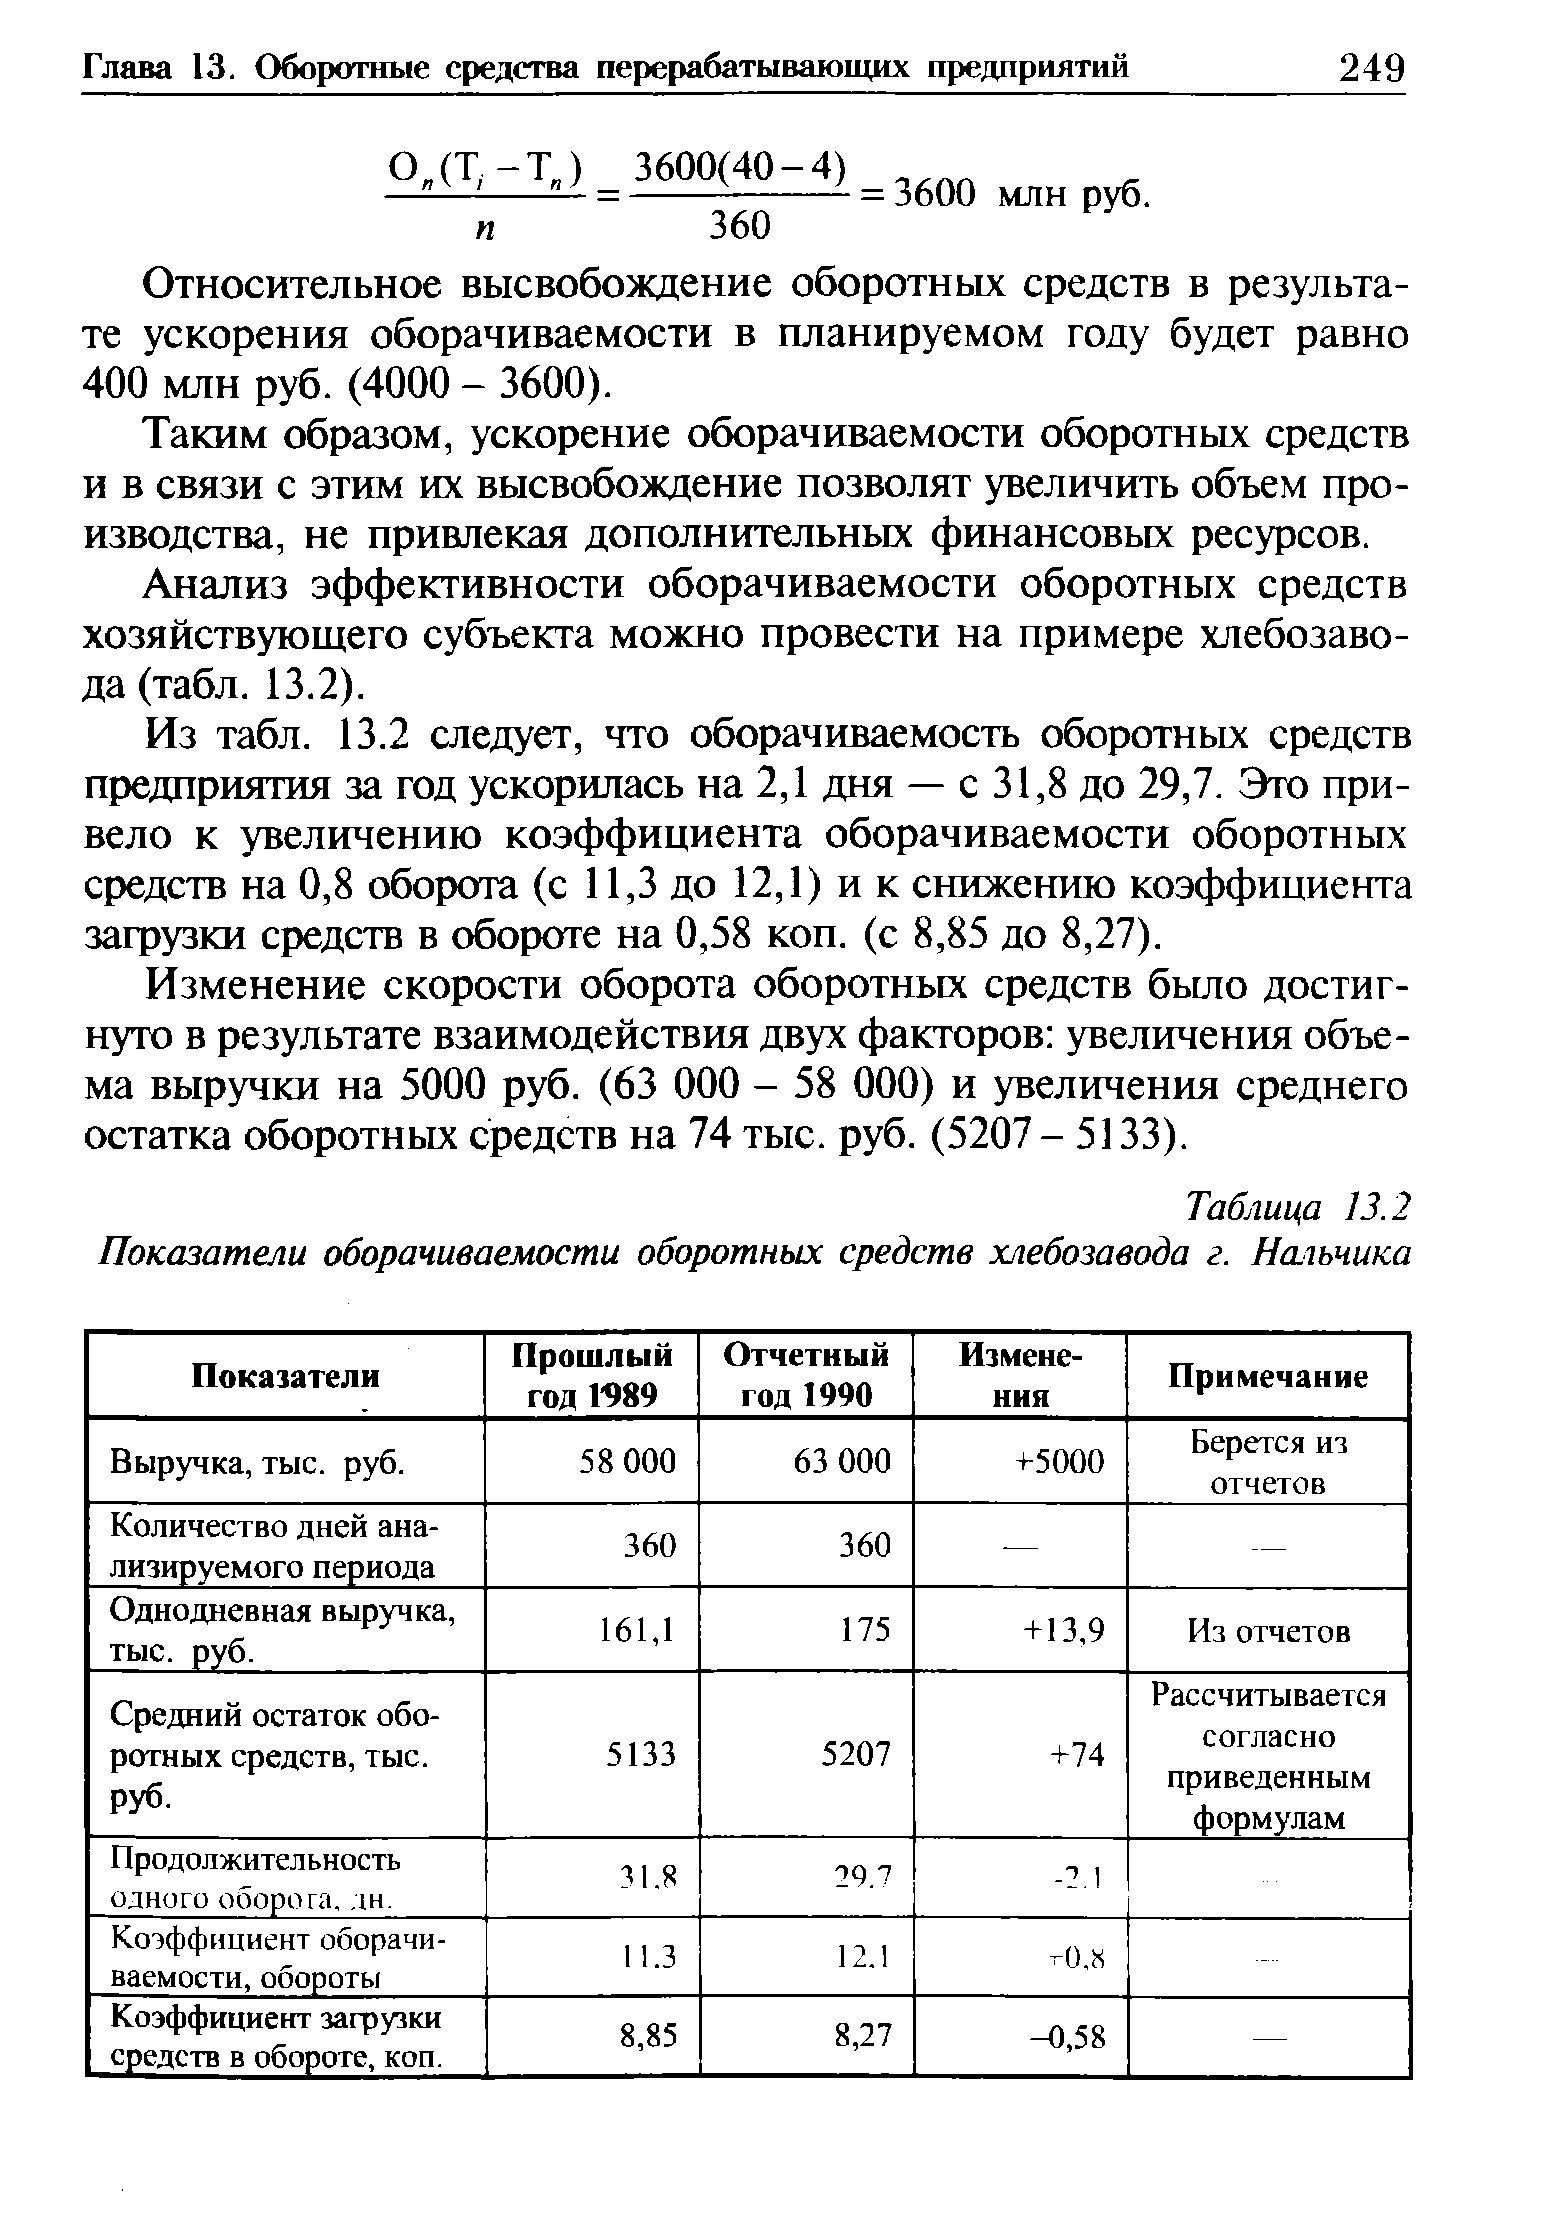 Таблица 13.2 Показатели оборачиваемости оборотных средств хлебозавода г. Нальчика
